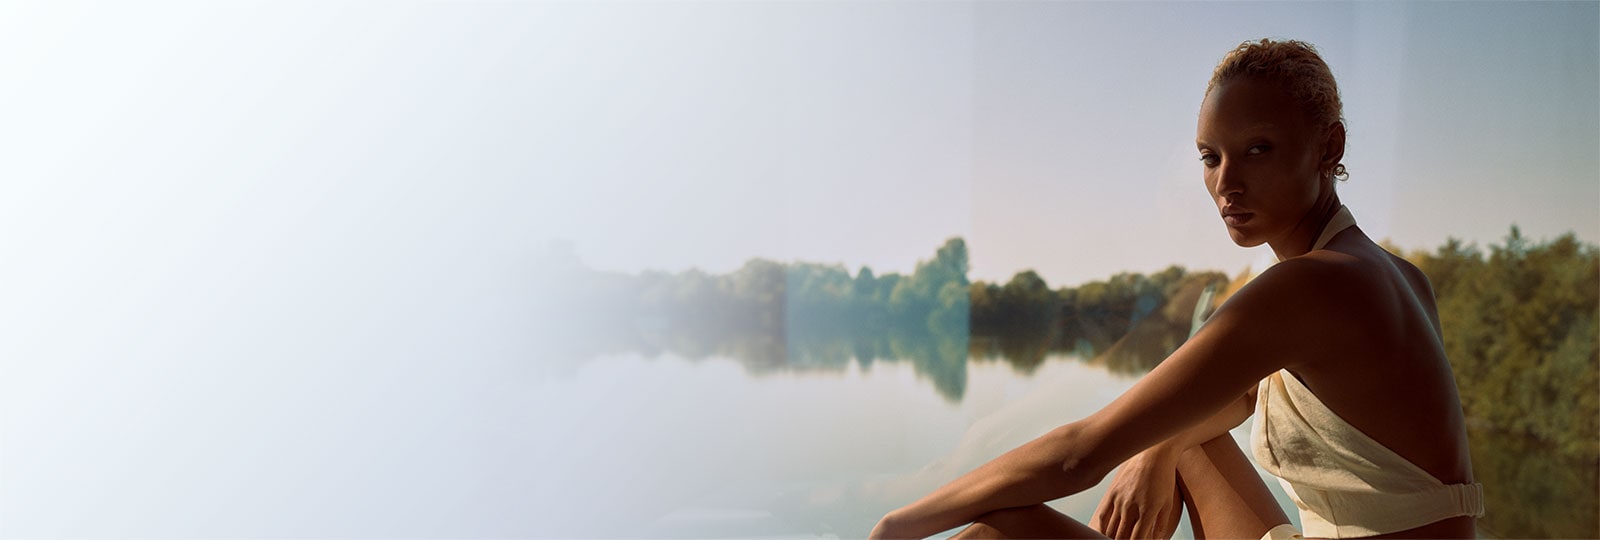 Bild eines Modells, das eines der Wintersonnenkapsel-Sammlungsstücke trägt, die vor einem schönen See sitzen.